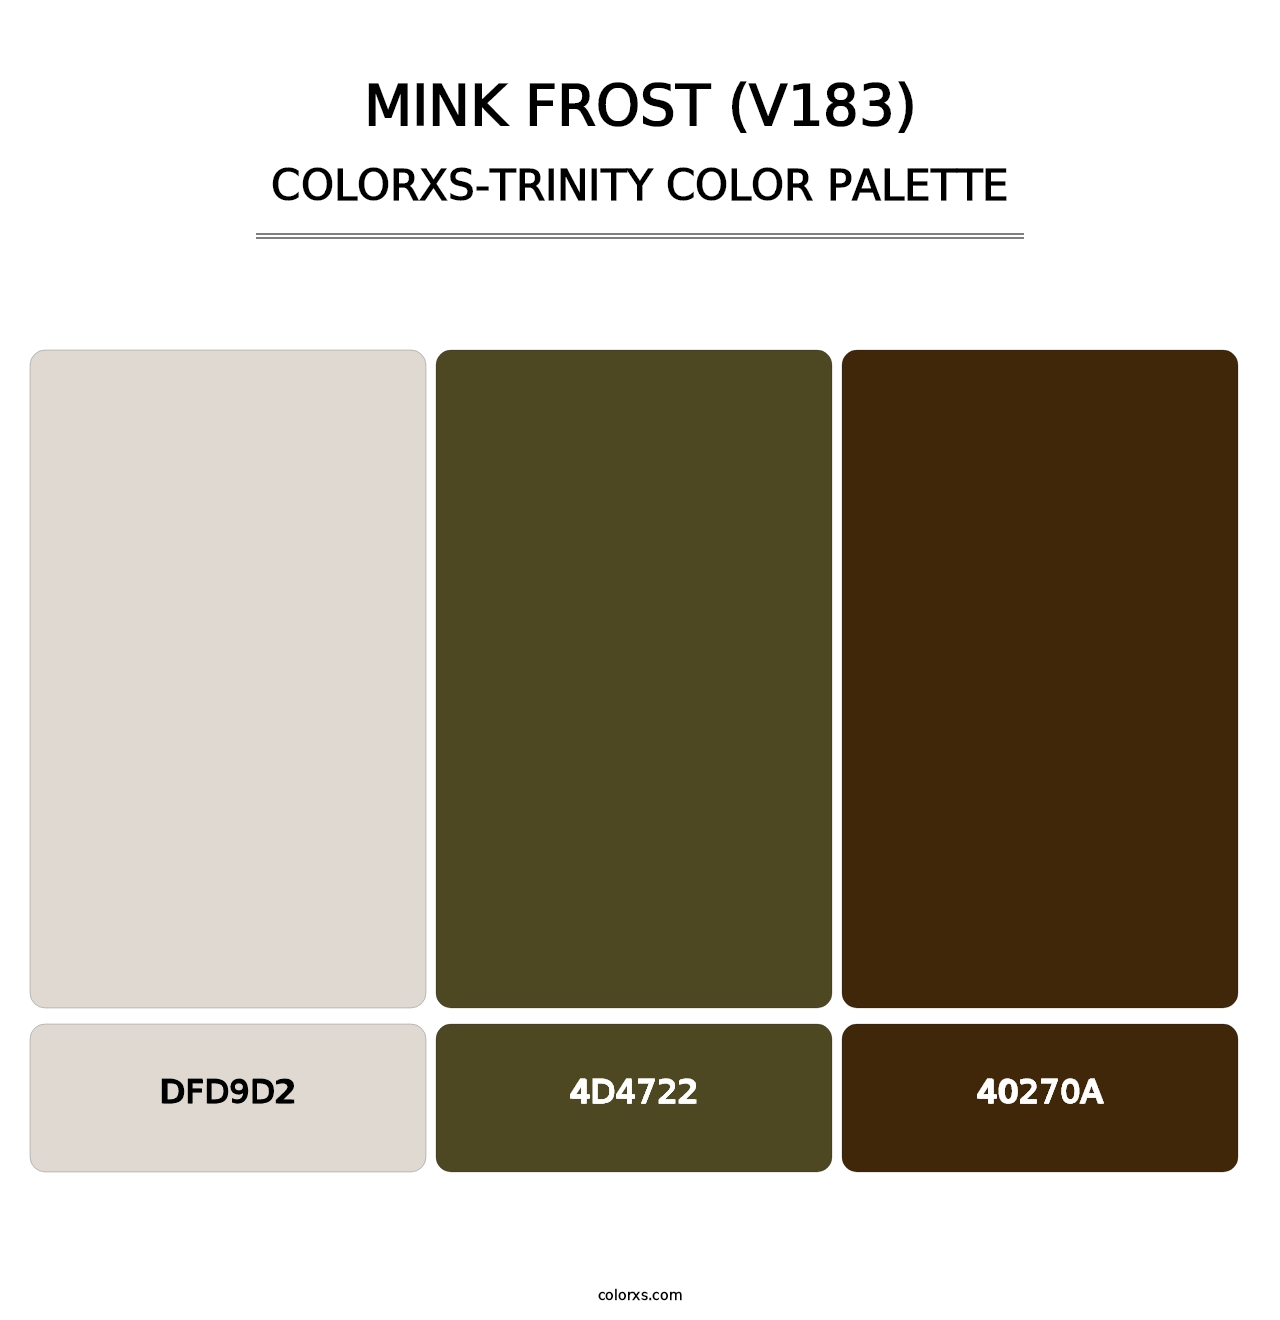 Mink Frost (V183) - Colorxs Trinity Palette